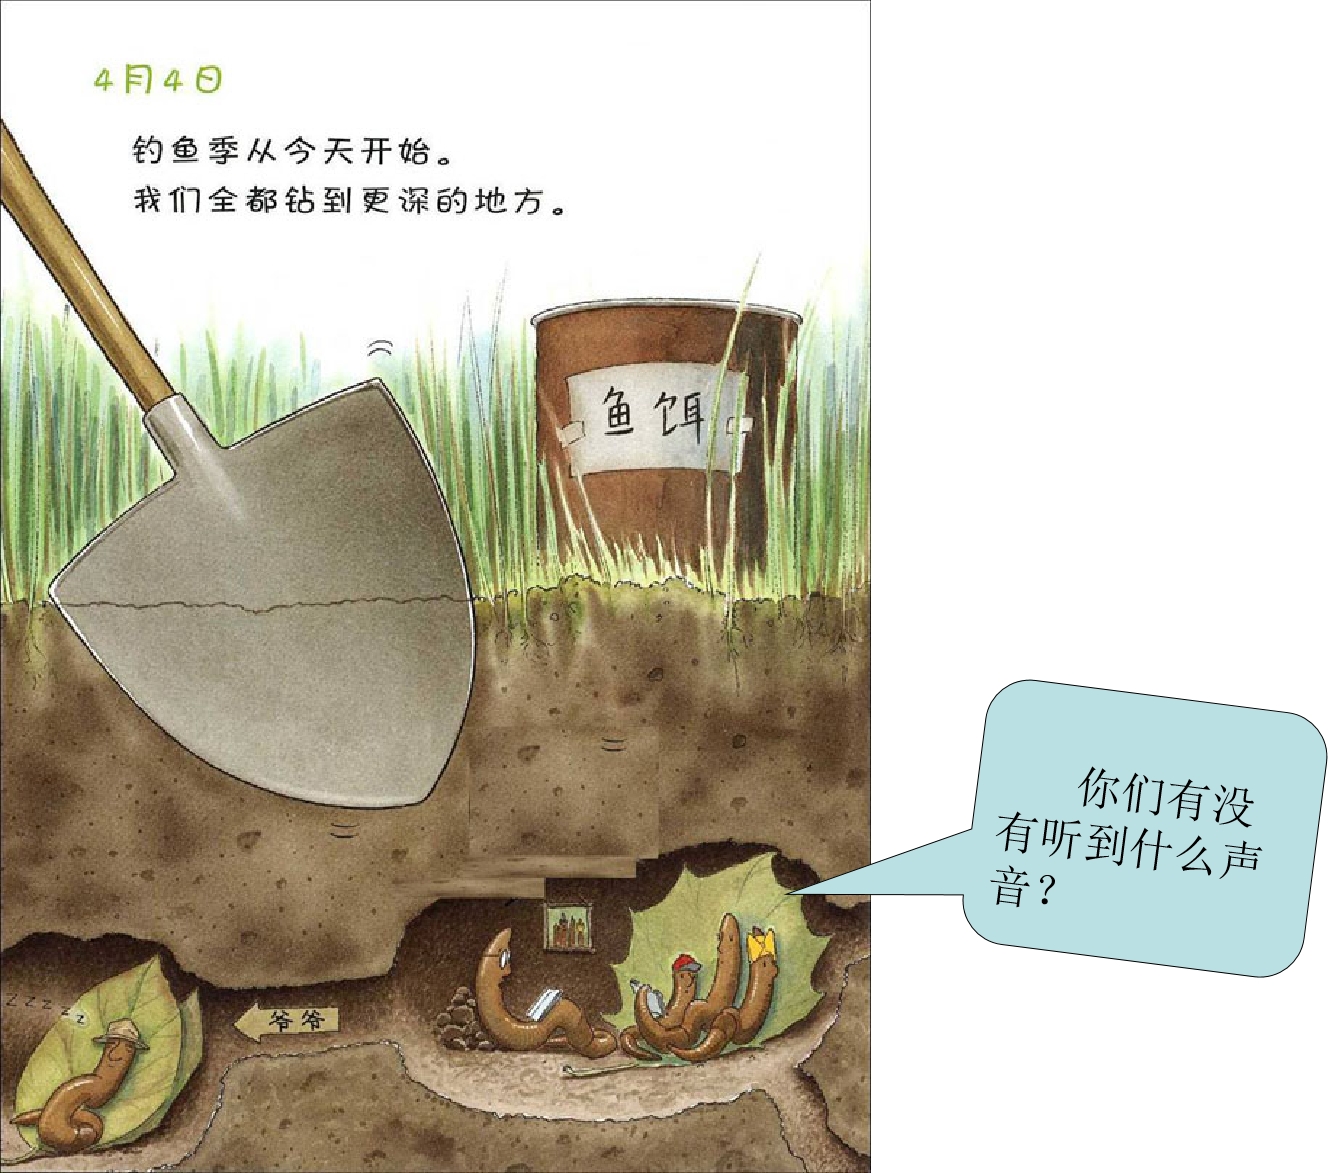 石镜幼儿园推荐绘本蚯蚓的日记